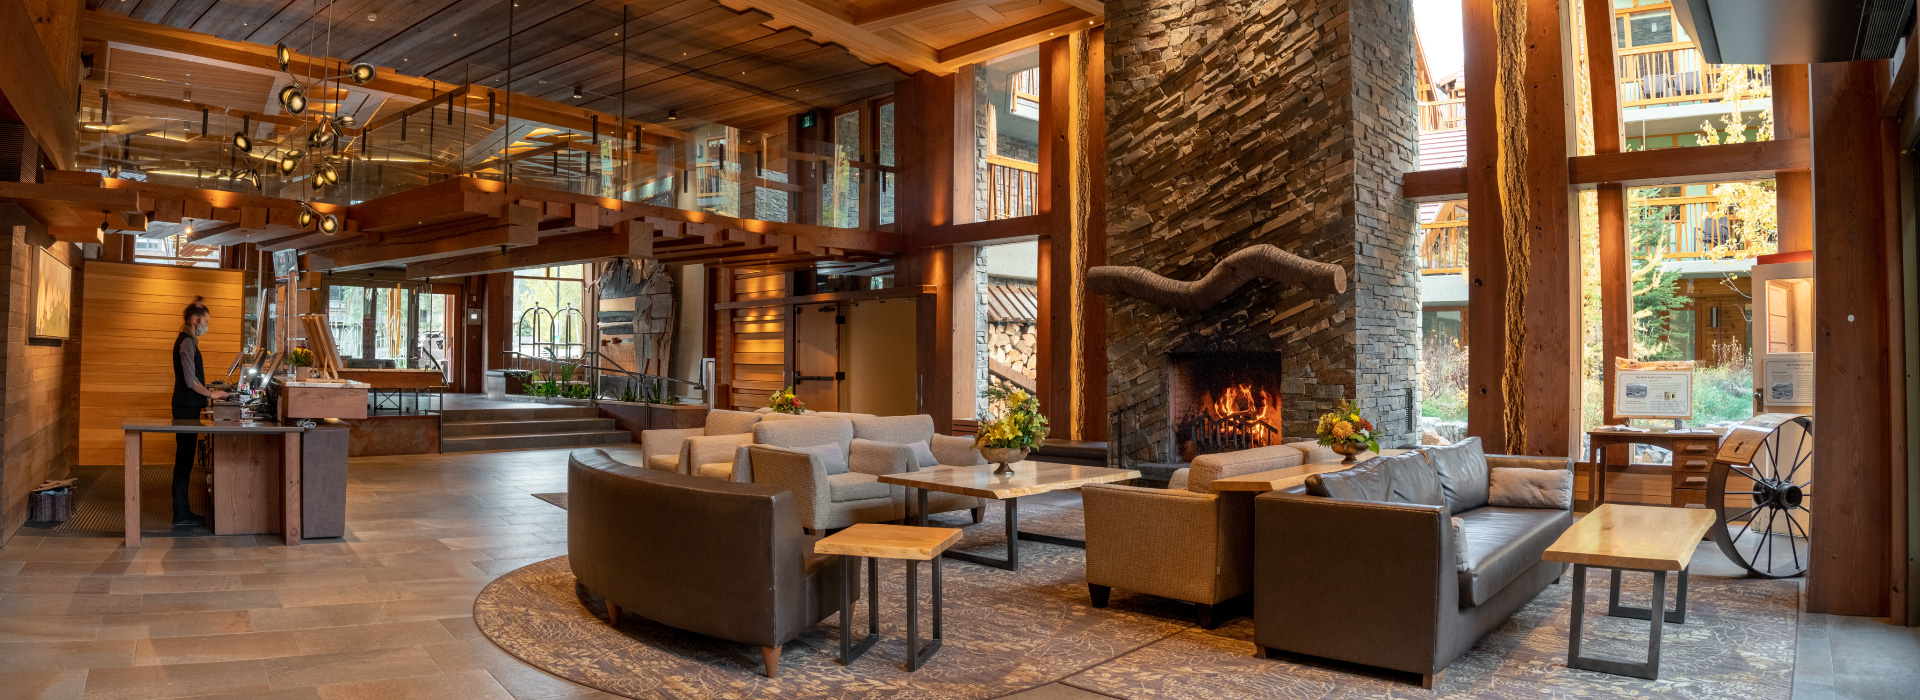 Moose Hotel & Suites Lobby